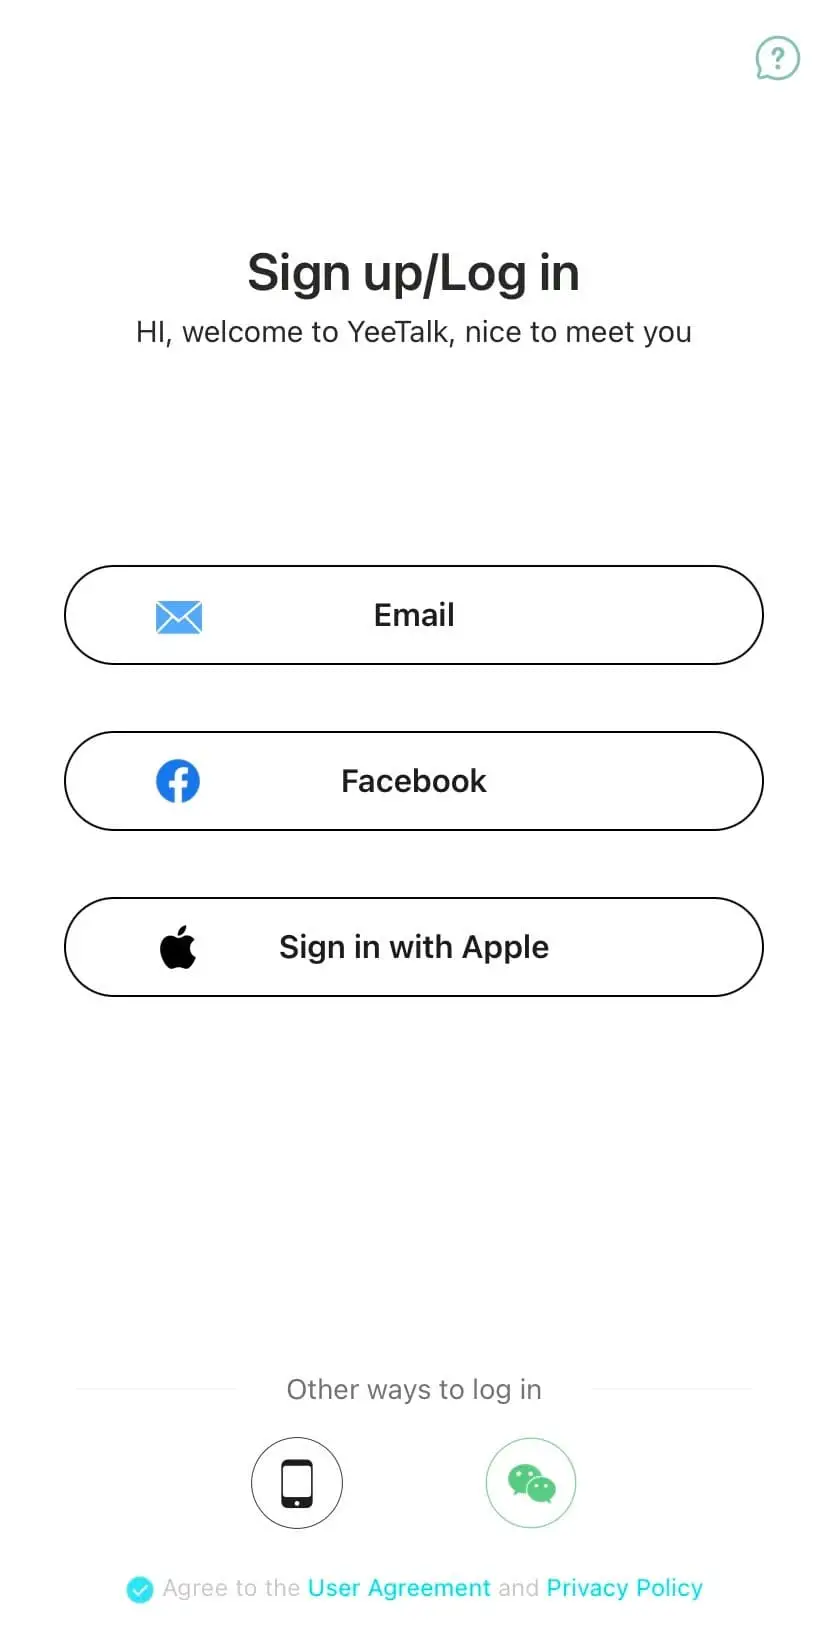 Lựa chọn cách đăng ký bằng Gmail, tài khoản Facebook hoặc tài khoản Apple